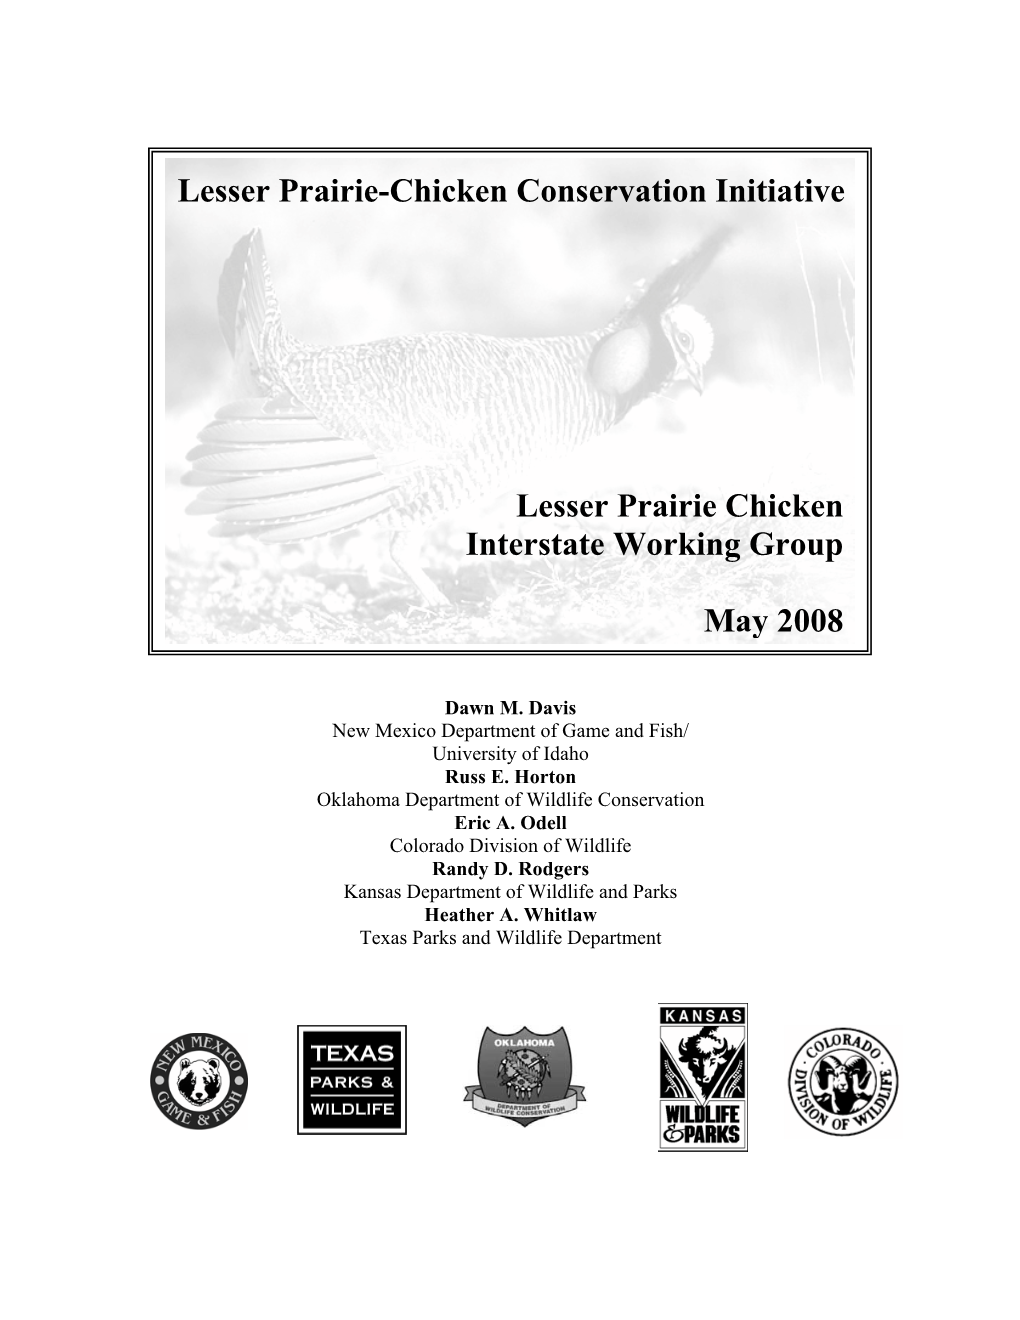 Lesser Prairie-Chicken Conservation Initiative, 2008